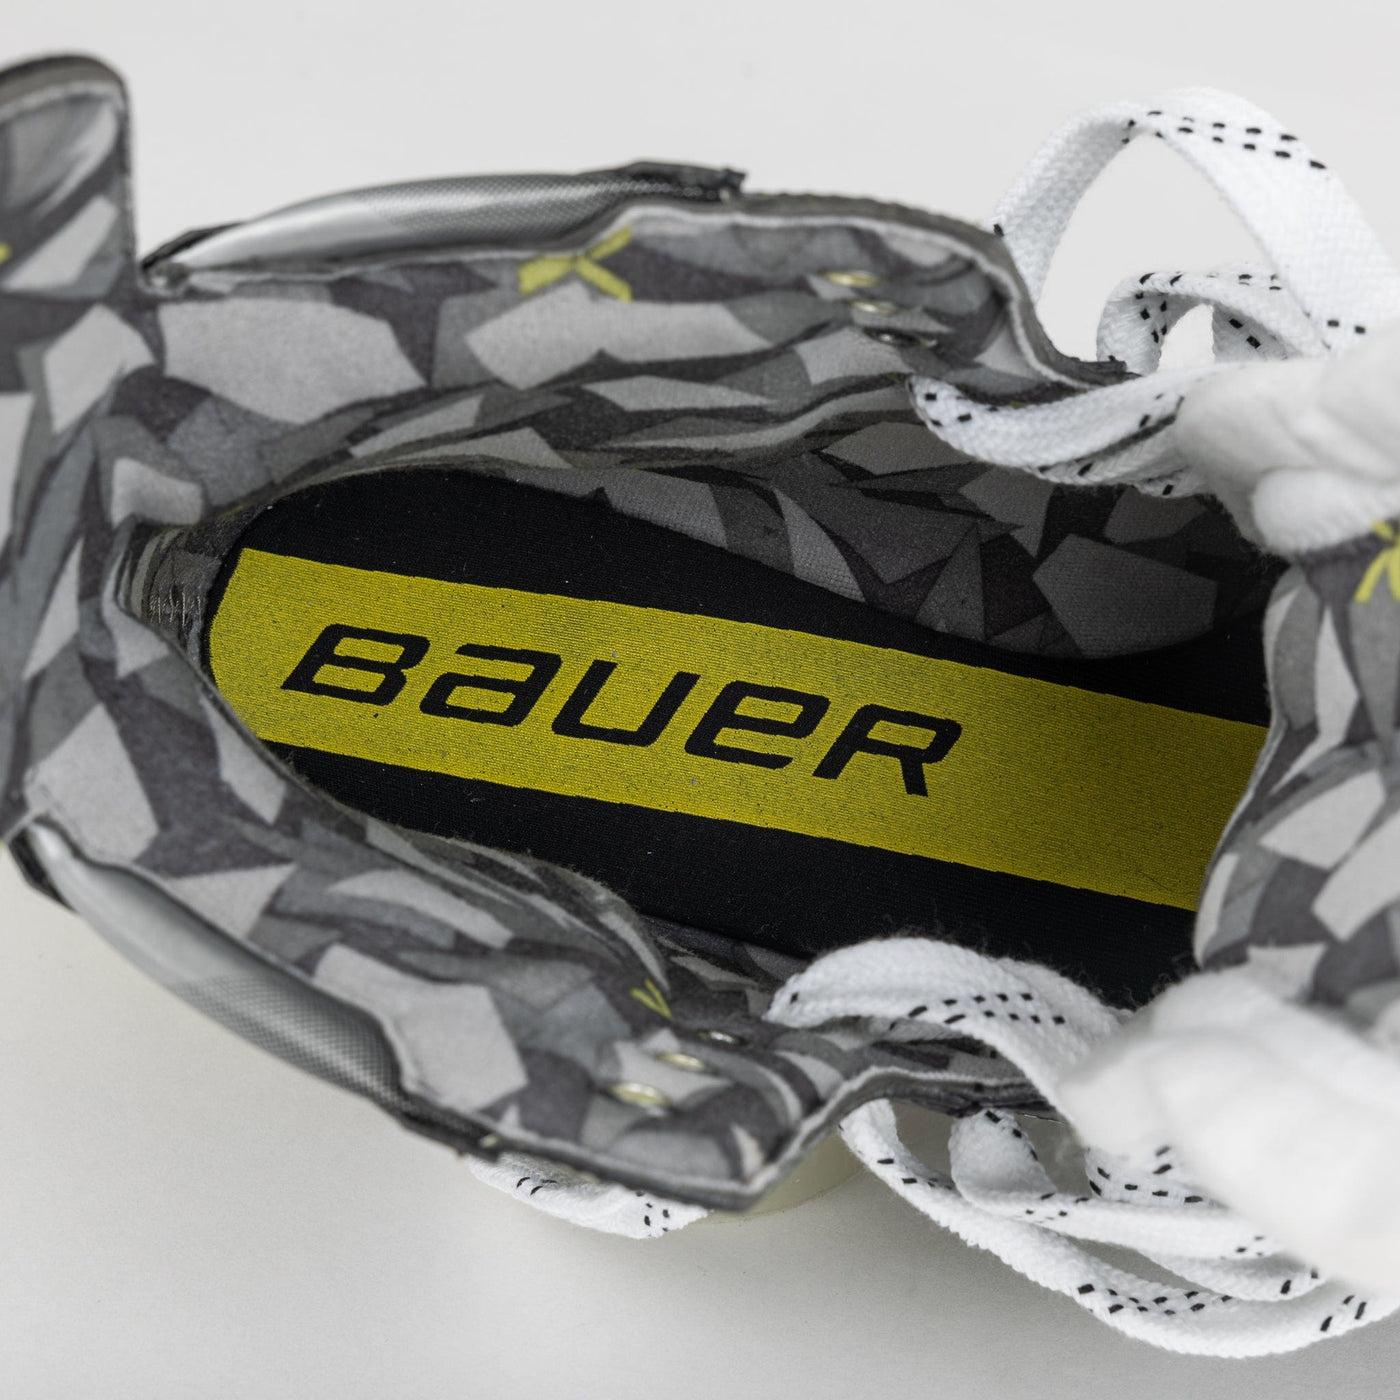 Bauer Vapor X3 Junior Roller Hockey Skates - TheHockeyShop.com